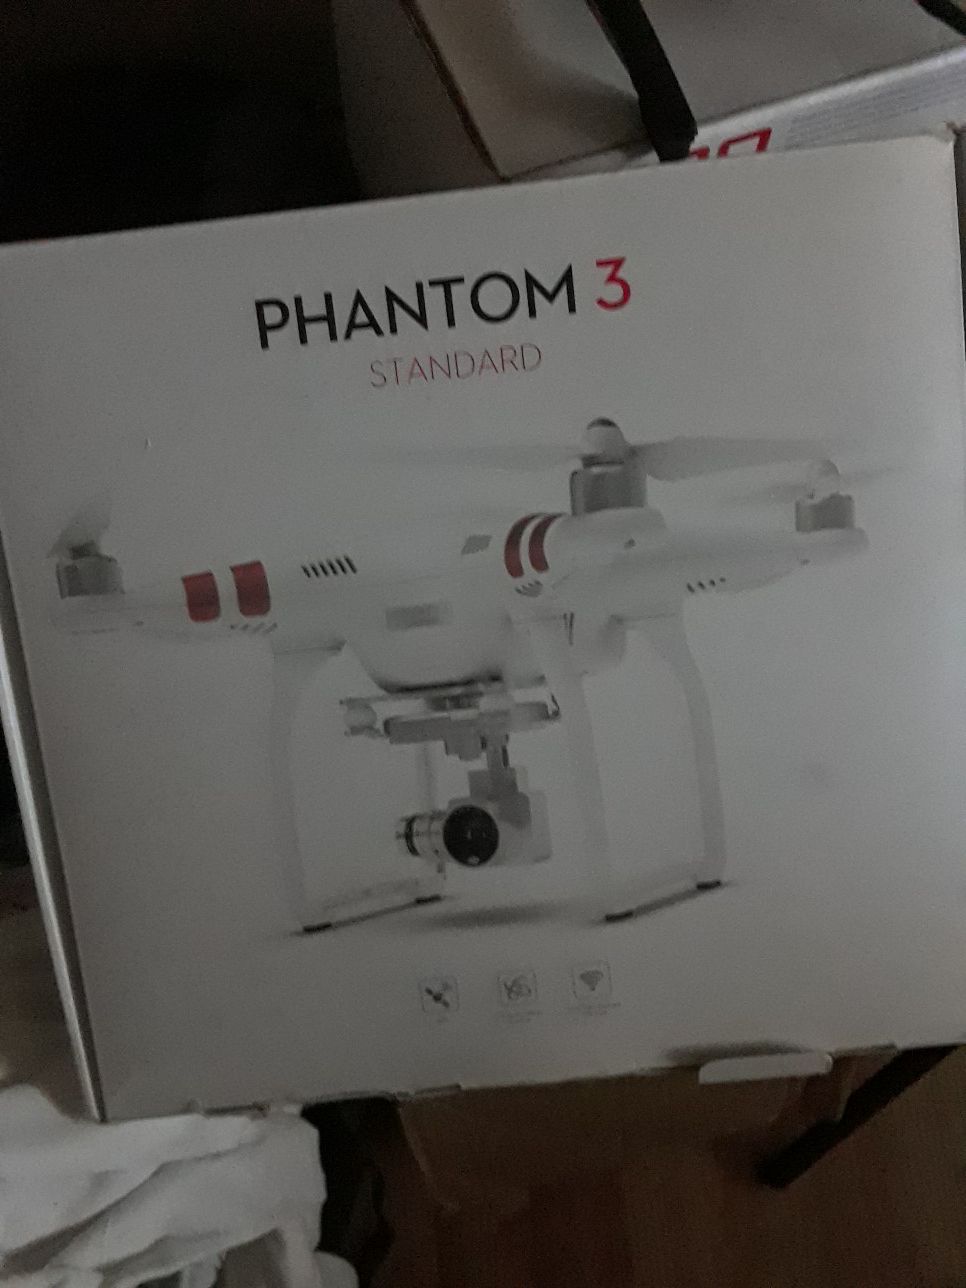 Dji phantom 3, drone